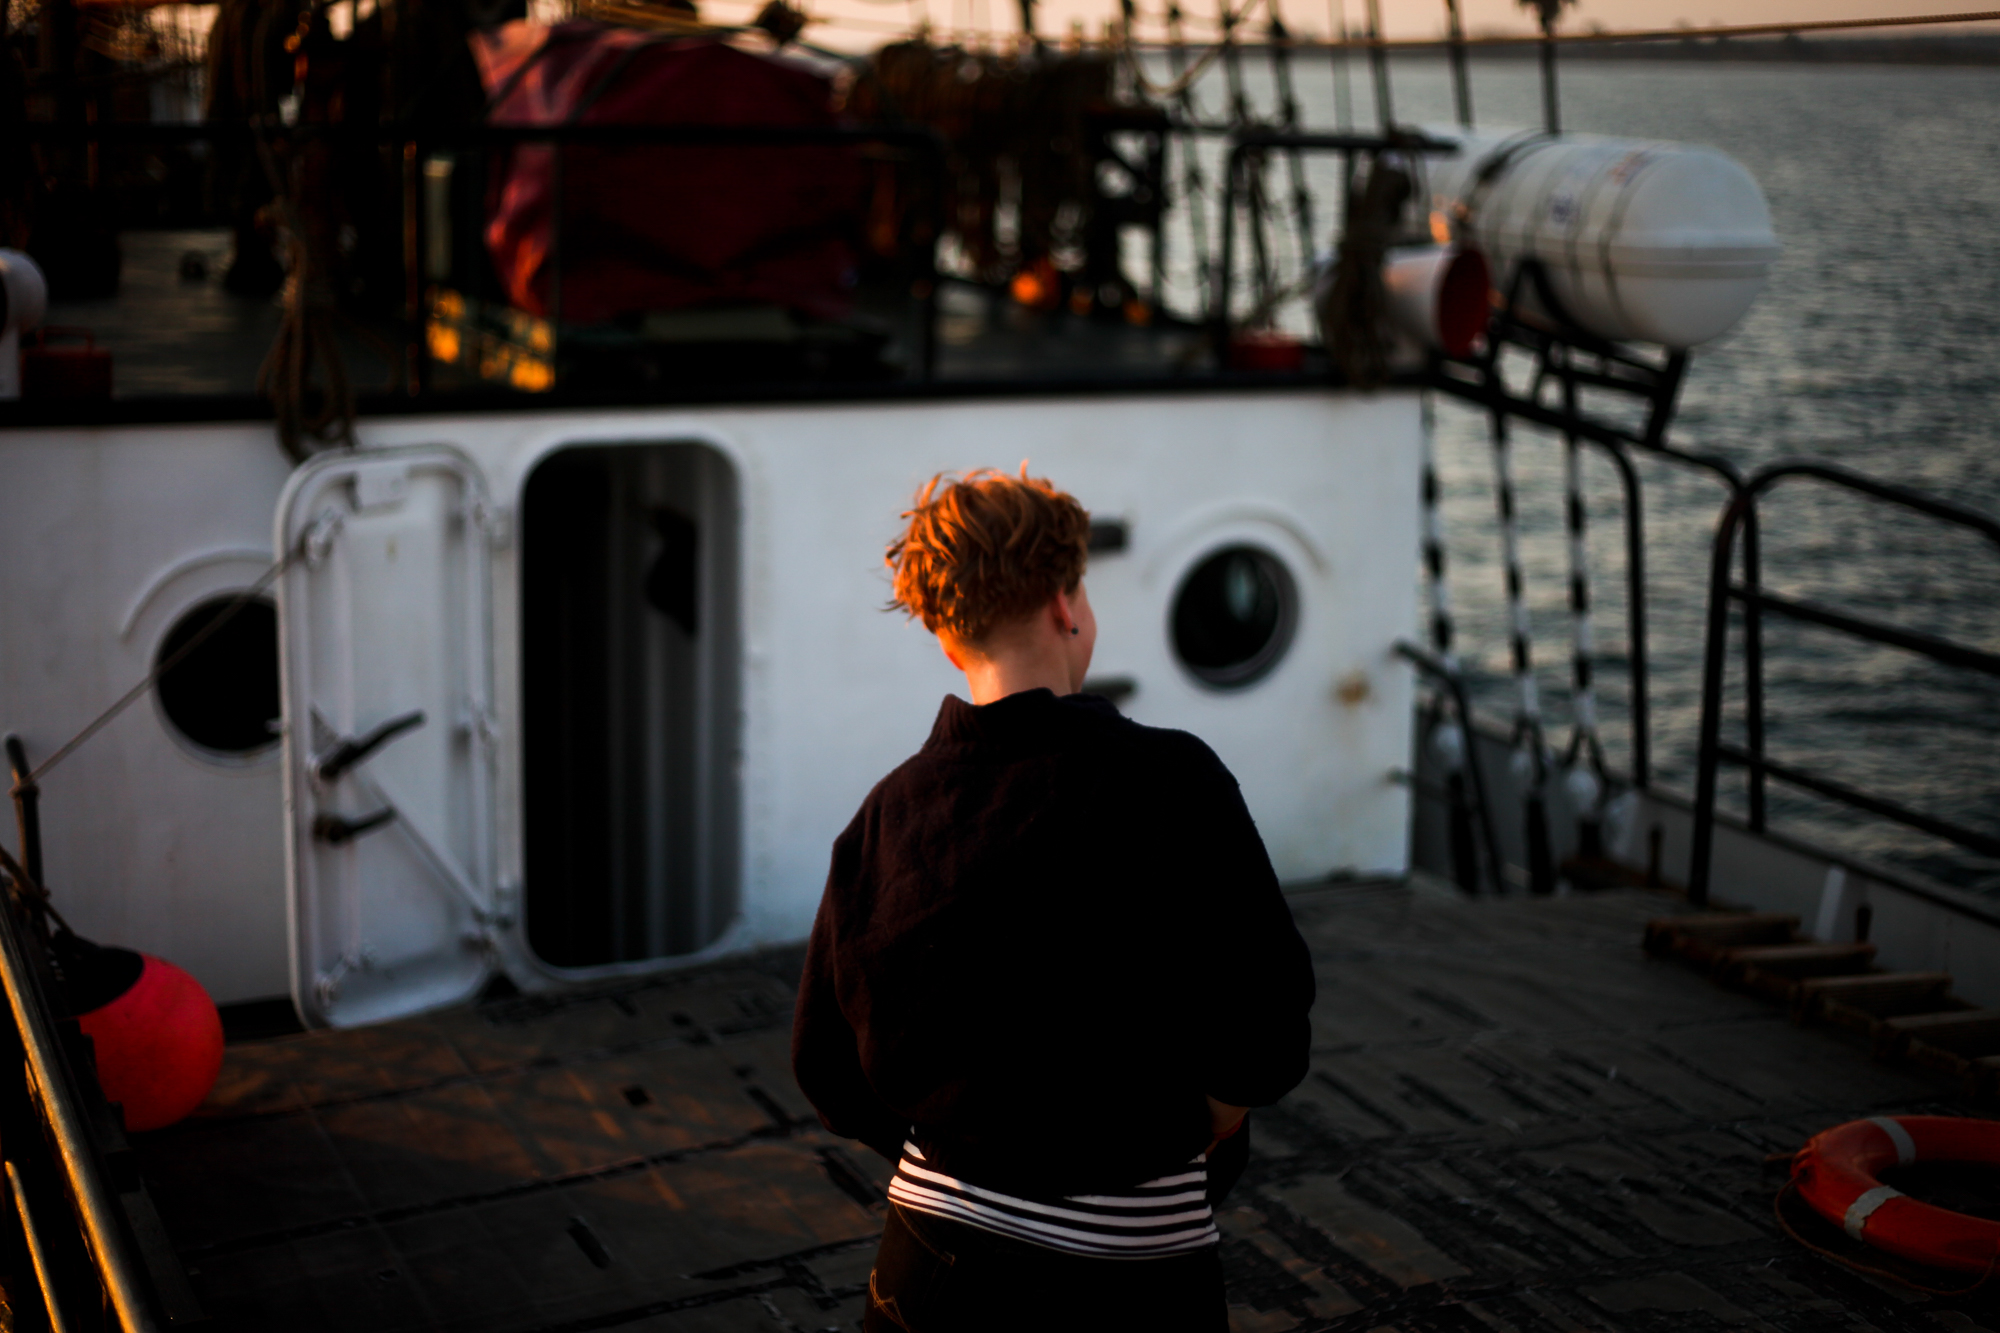 Charlotte Strauss auf dem Schiff Fridjof Nanson wo sie ihren Ausbildungsturn om 31. 7 bis 5. 8 absolviert. Fotograf: Evi Lemberger